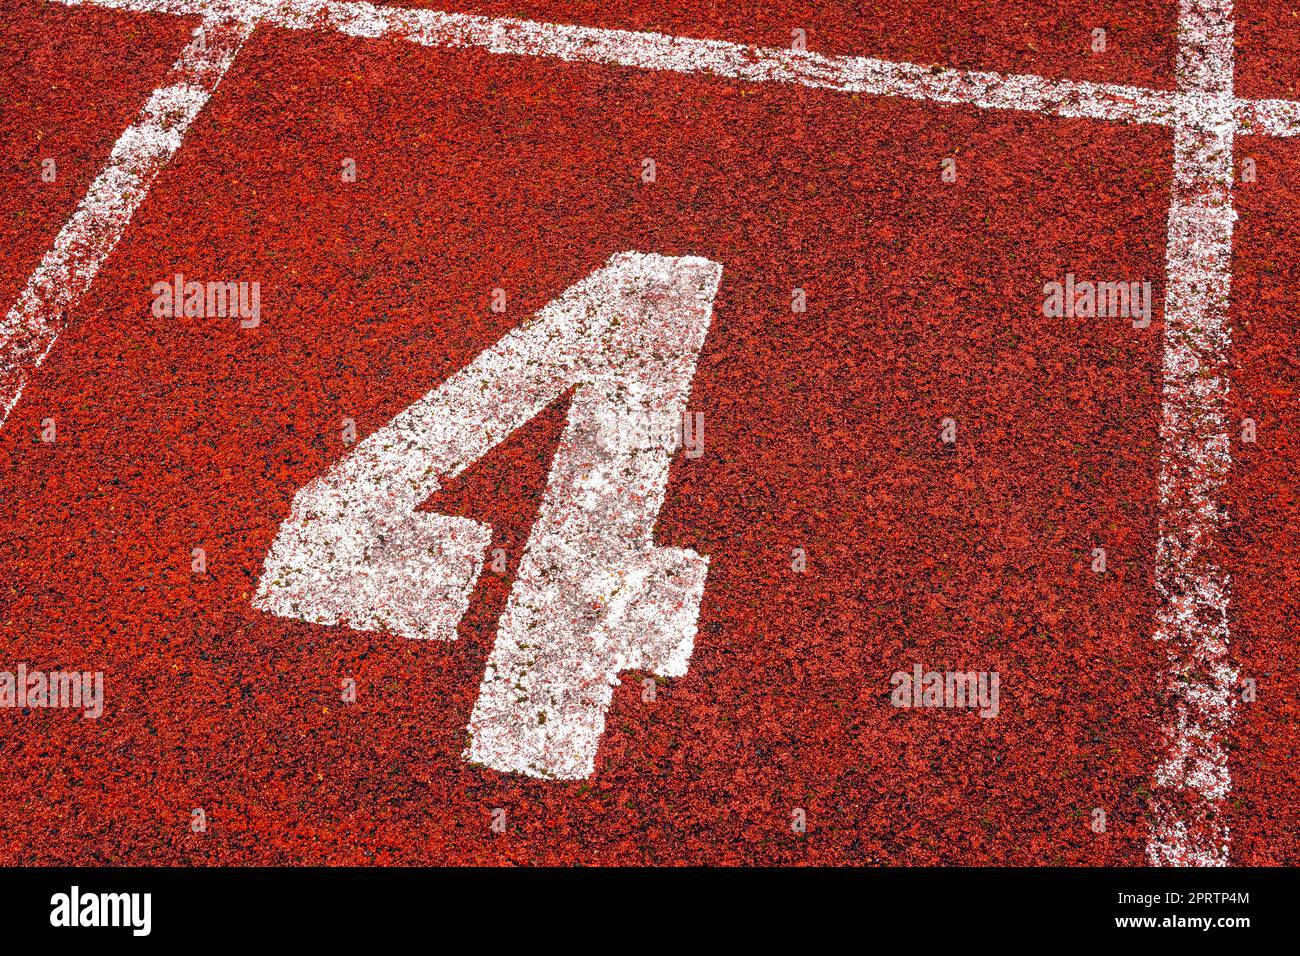 Die Zahl 4 am Startpunkt der Laufstrecke oder der Sportstrecke im Stadion Stockfoto